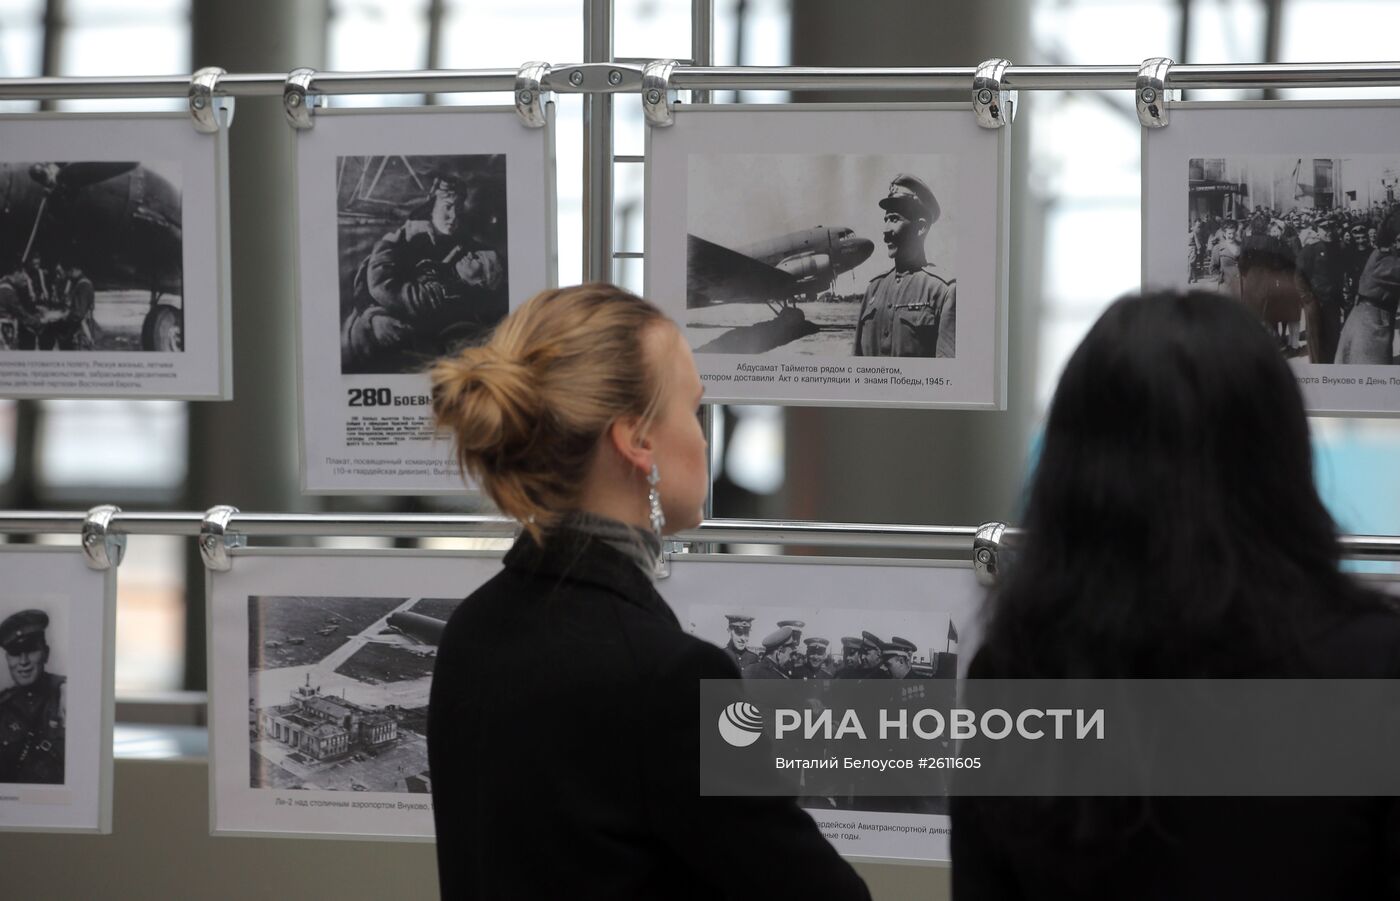 Открытие мультимедийной выставки "Победа! 70 лет" в аэропорту "Внуково"